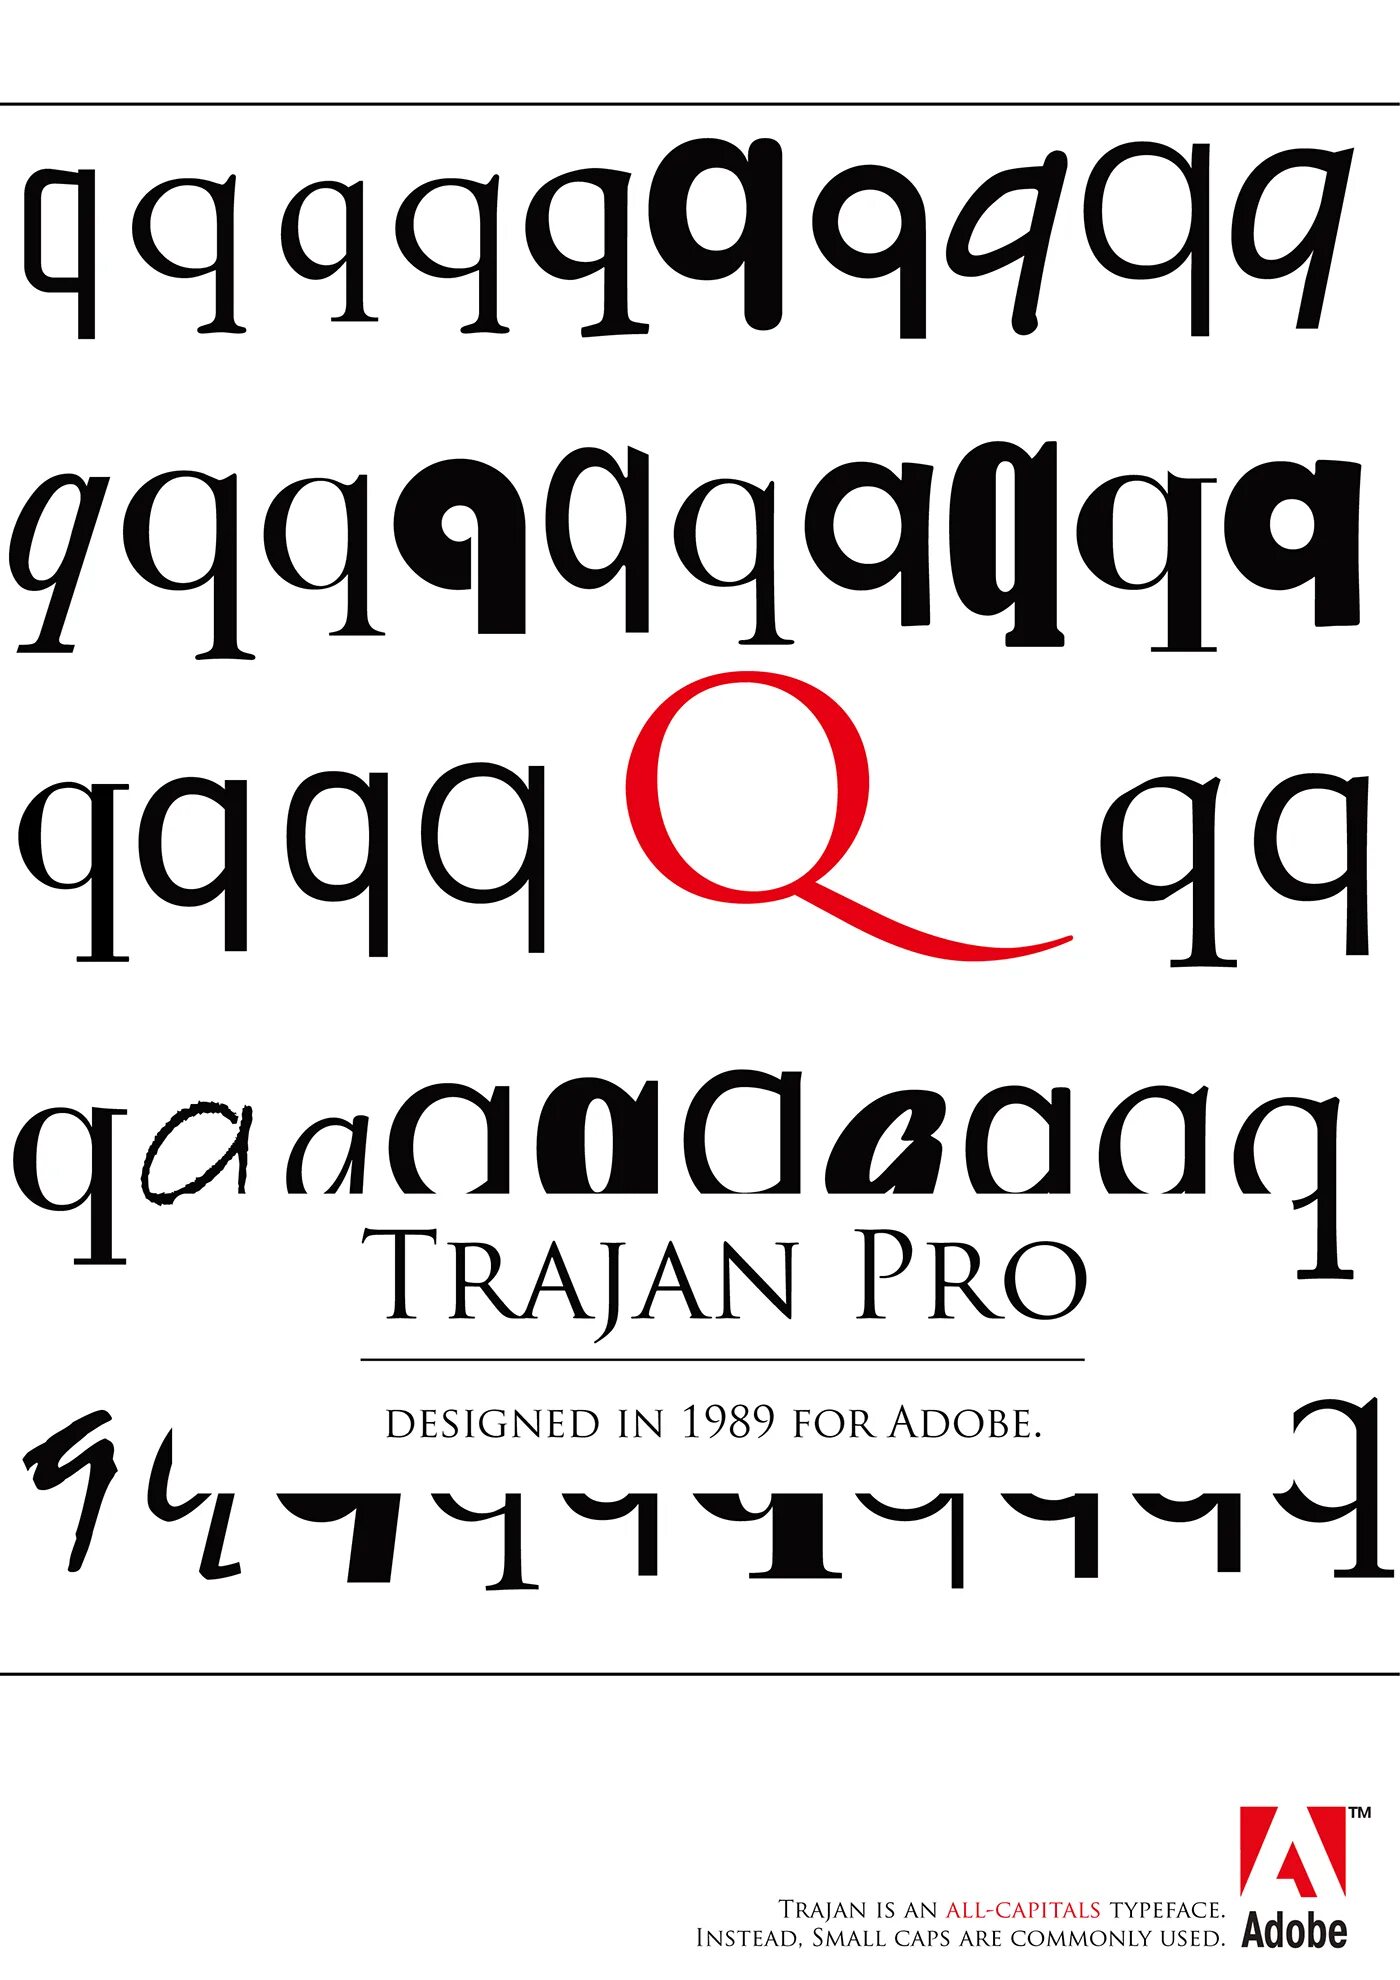 Шрифт trajan pro. Шрифт Trajan. Trajan Pro font. Trajan (typeface). Trajan Color шрифт.